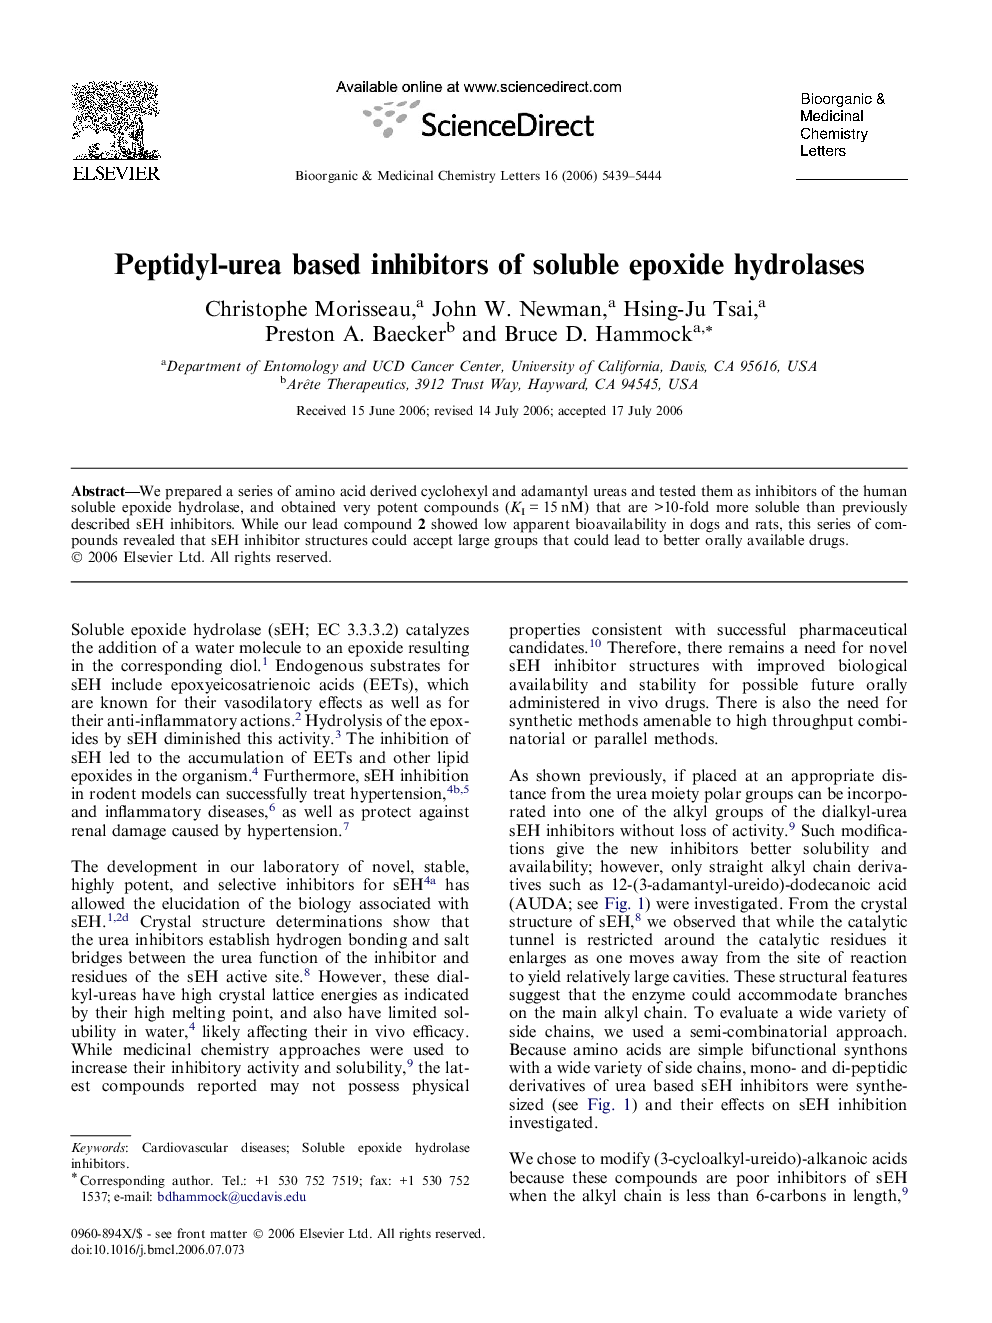 Peptidyl-urea based inhibitors of soluble epoxide hydrolases